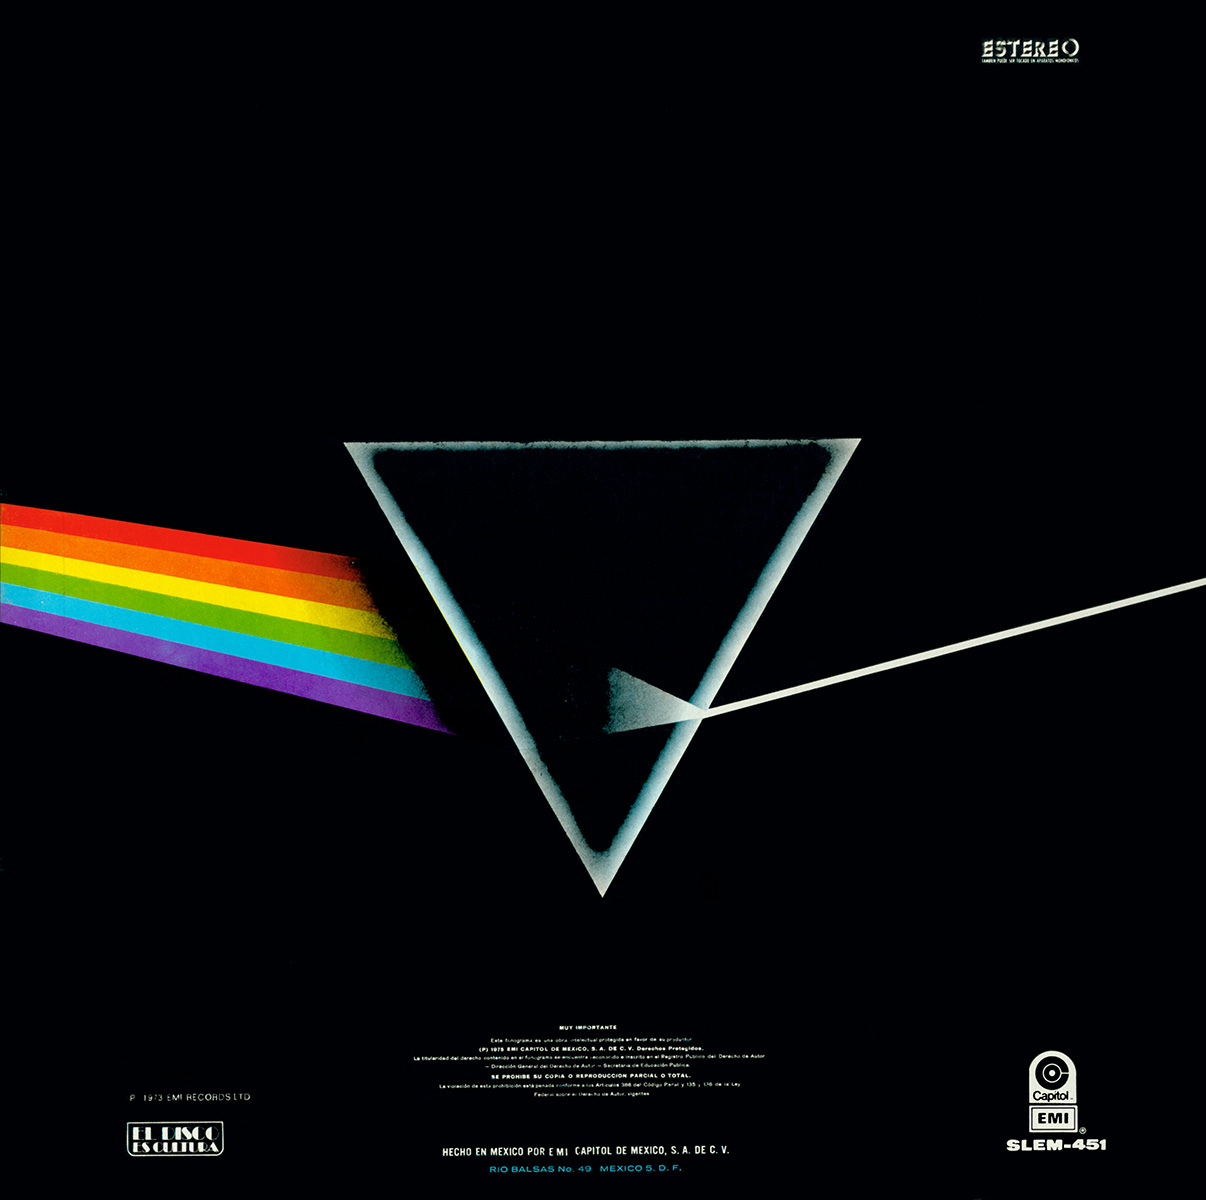 Editarán discografía completa de Pink Floyd en vinilo - El Sol de México